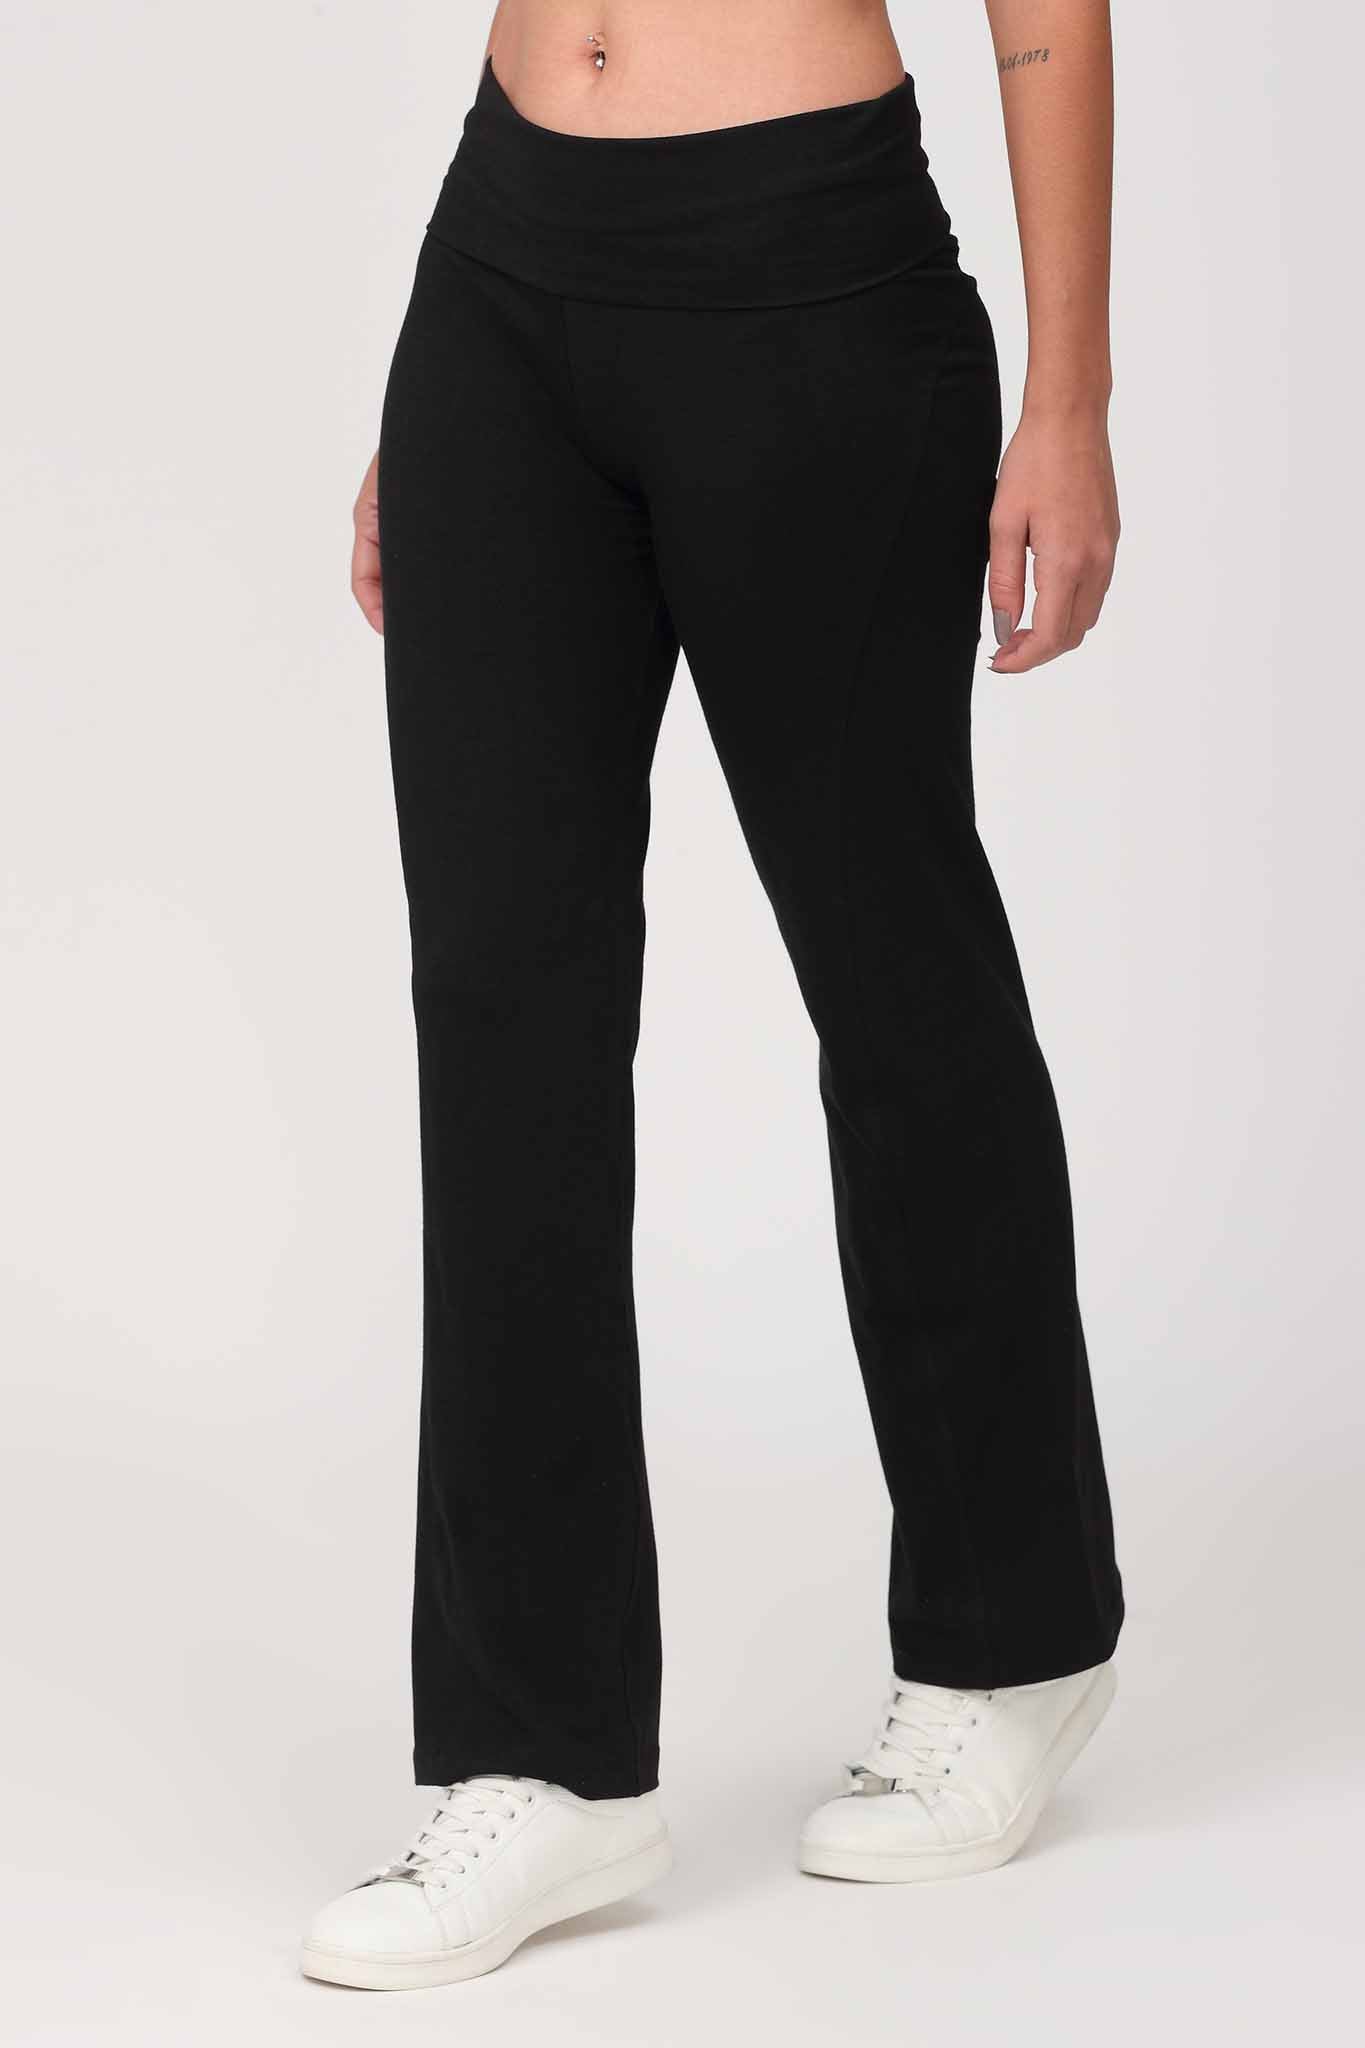 Omtex Lower Black Yoga Pants, Slim Fit at Rs 1406 in Mumbai